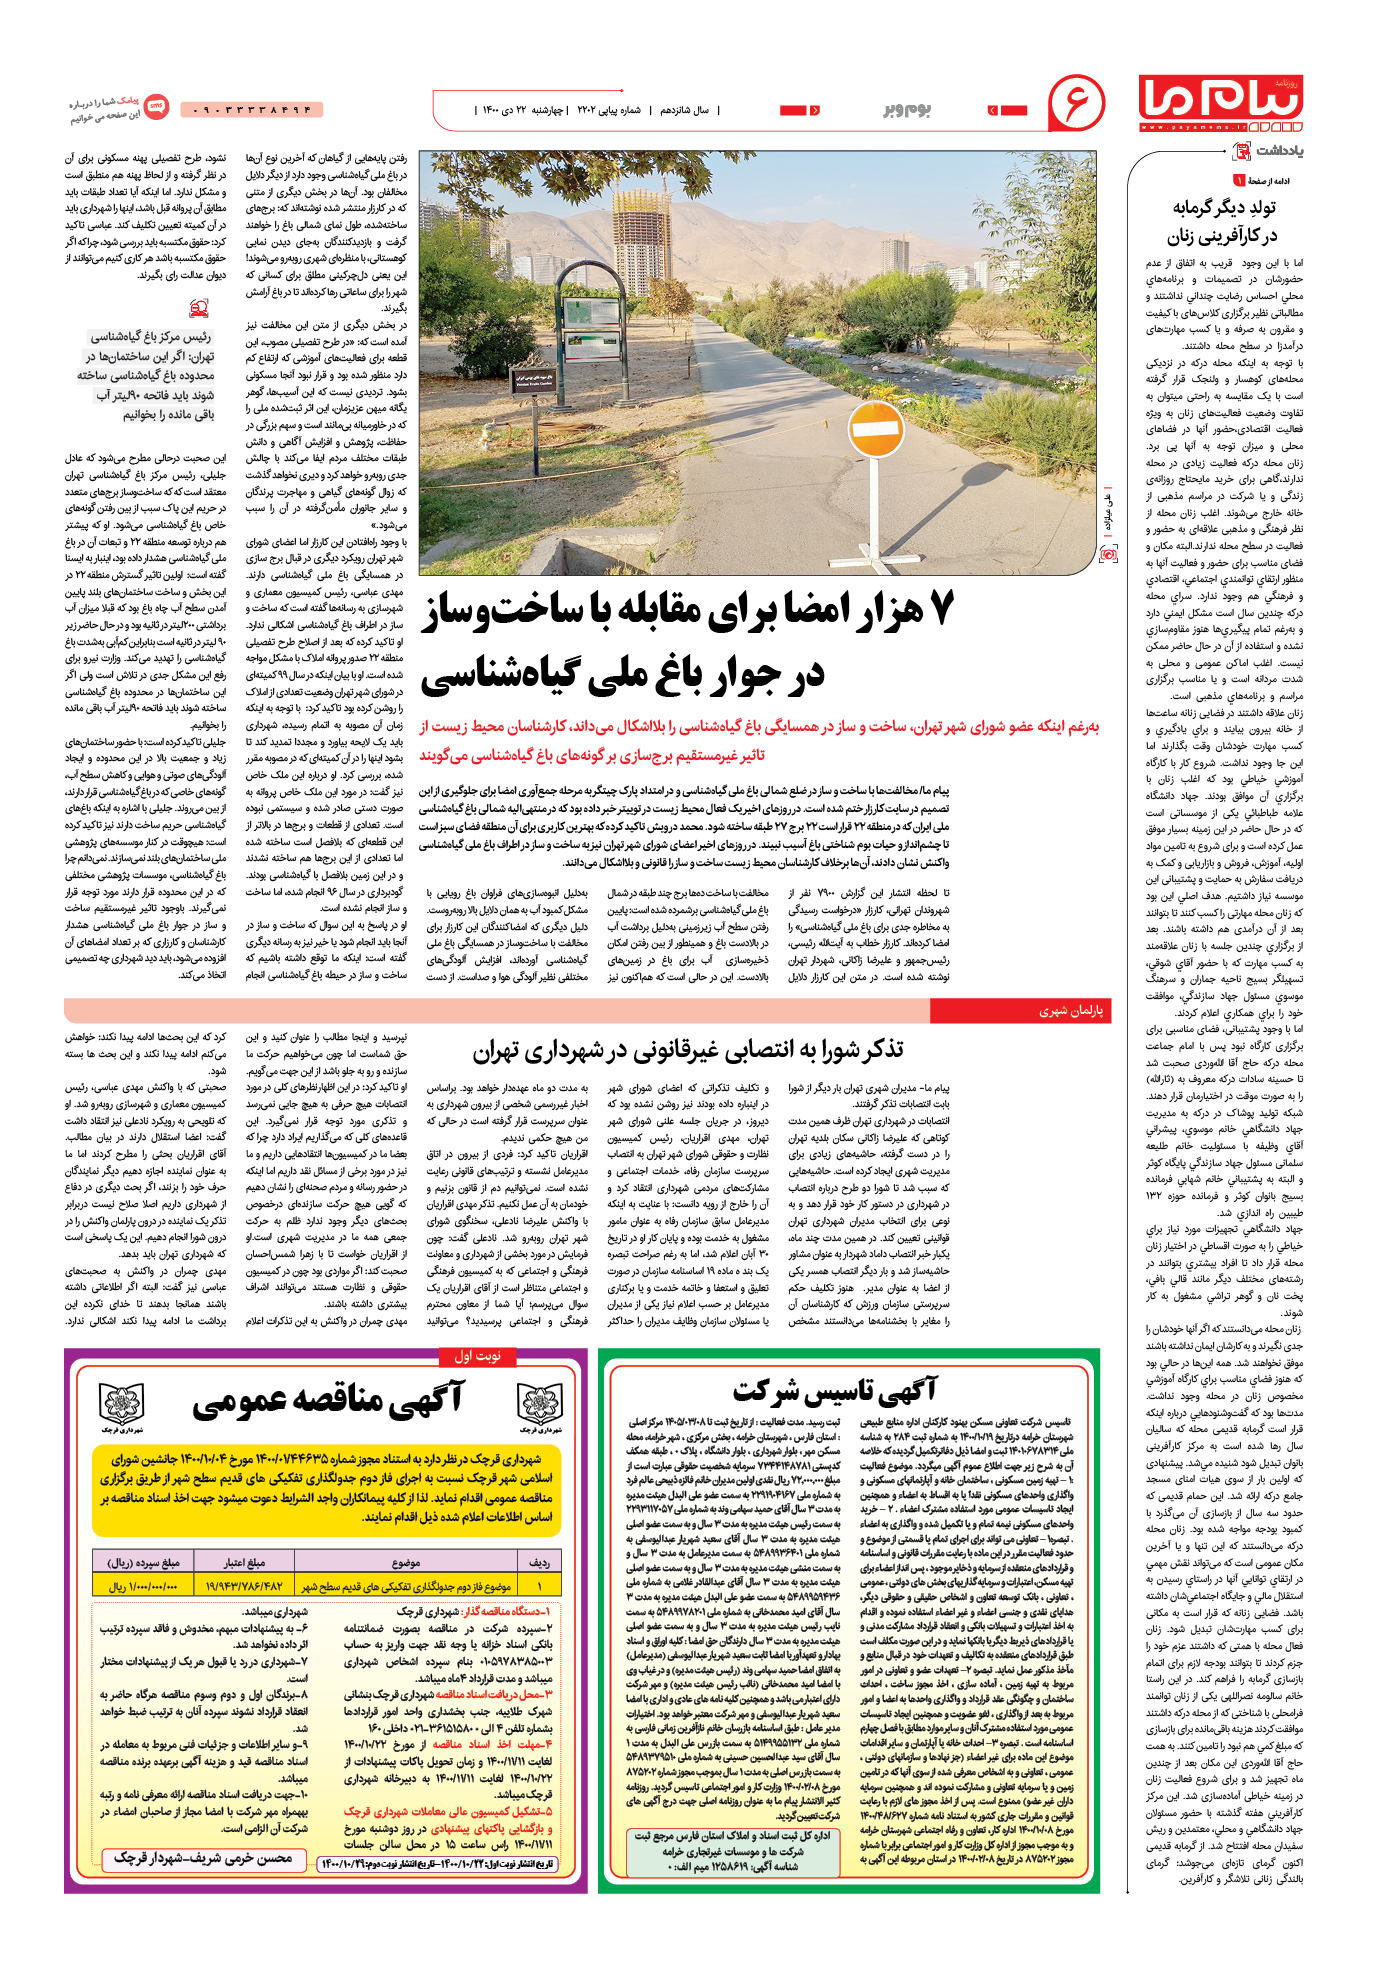 تذکر شورا به انتصابی غیرقانونی در شهرداری تهران